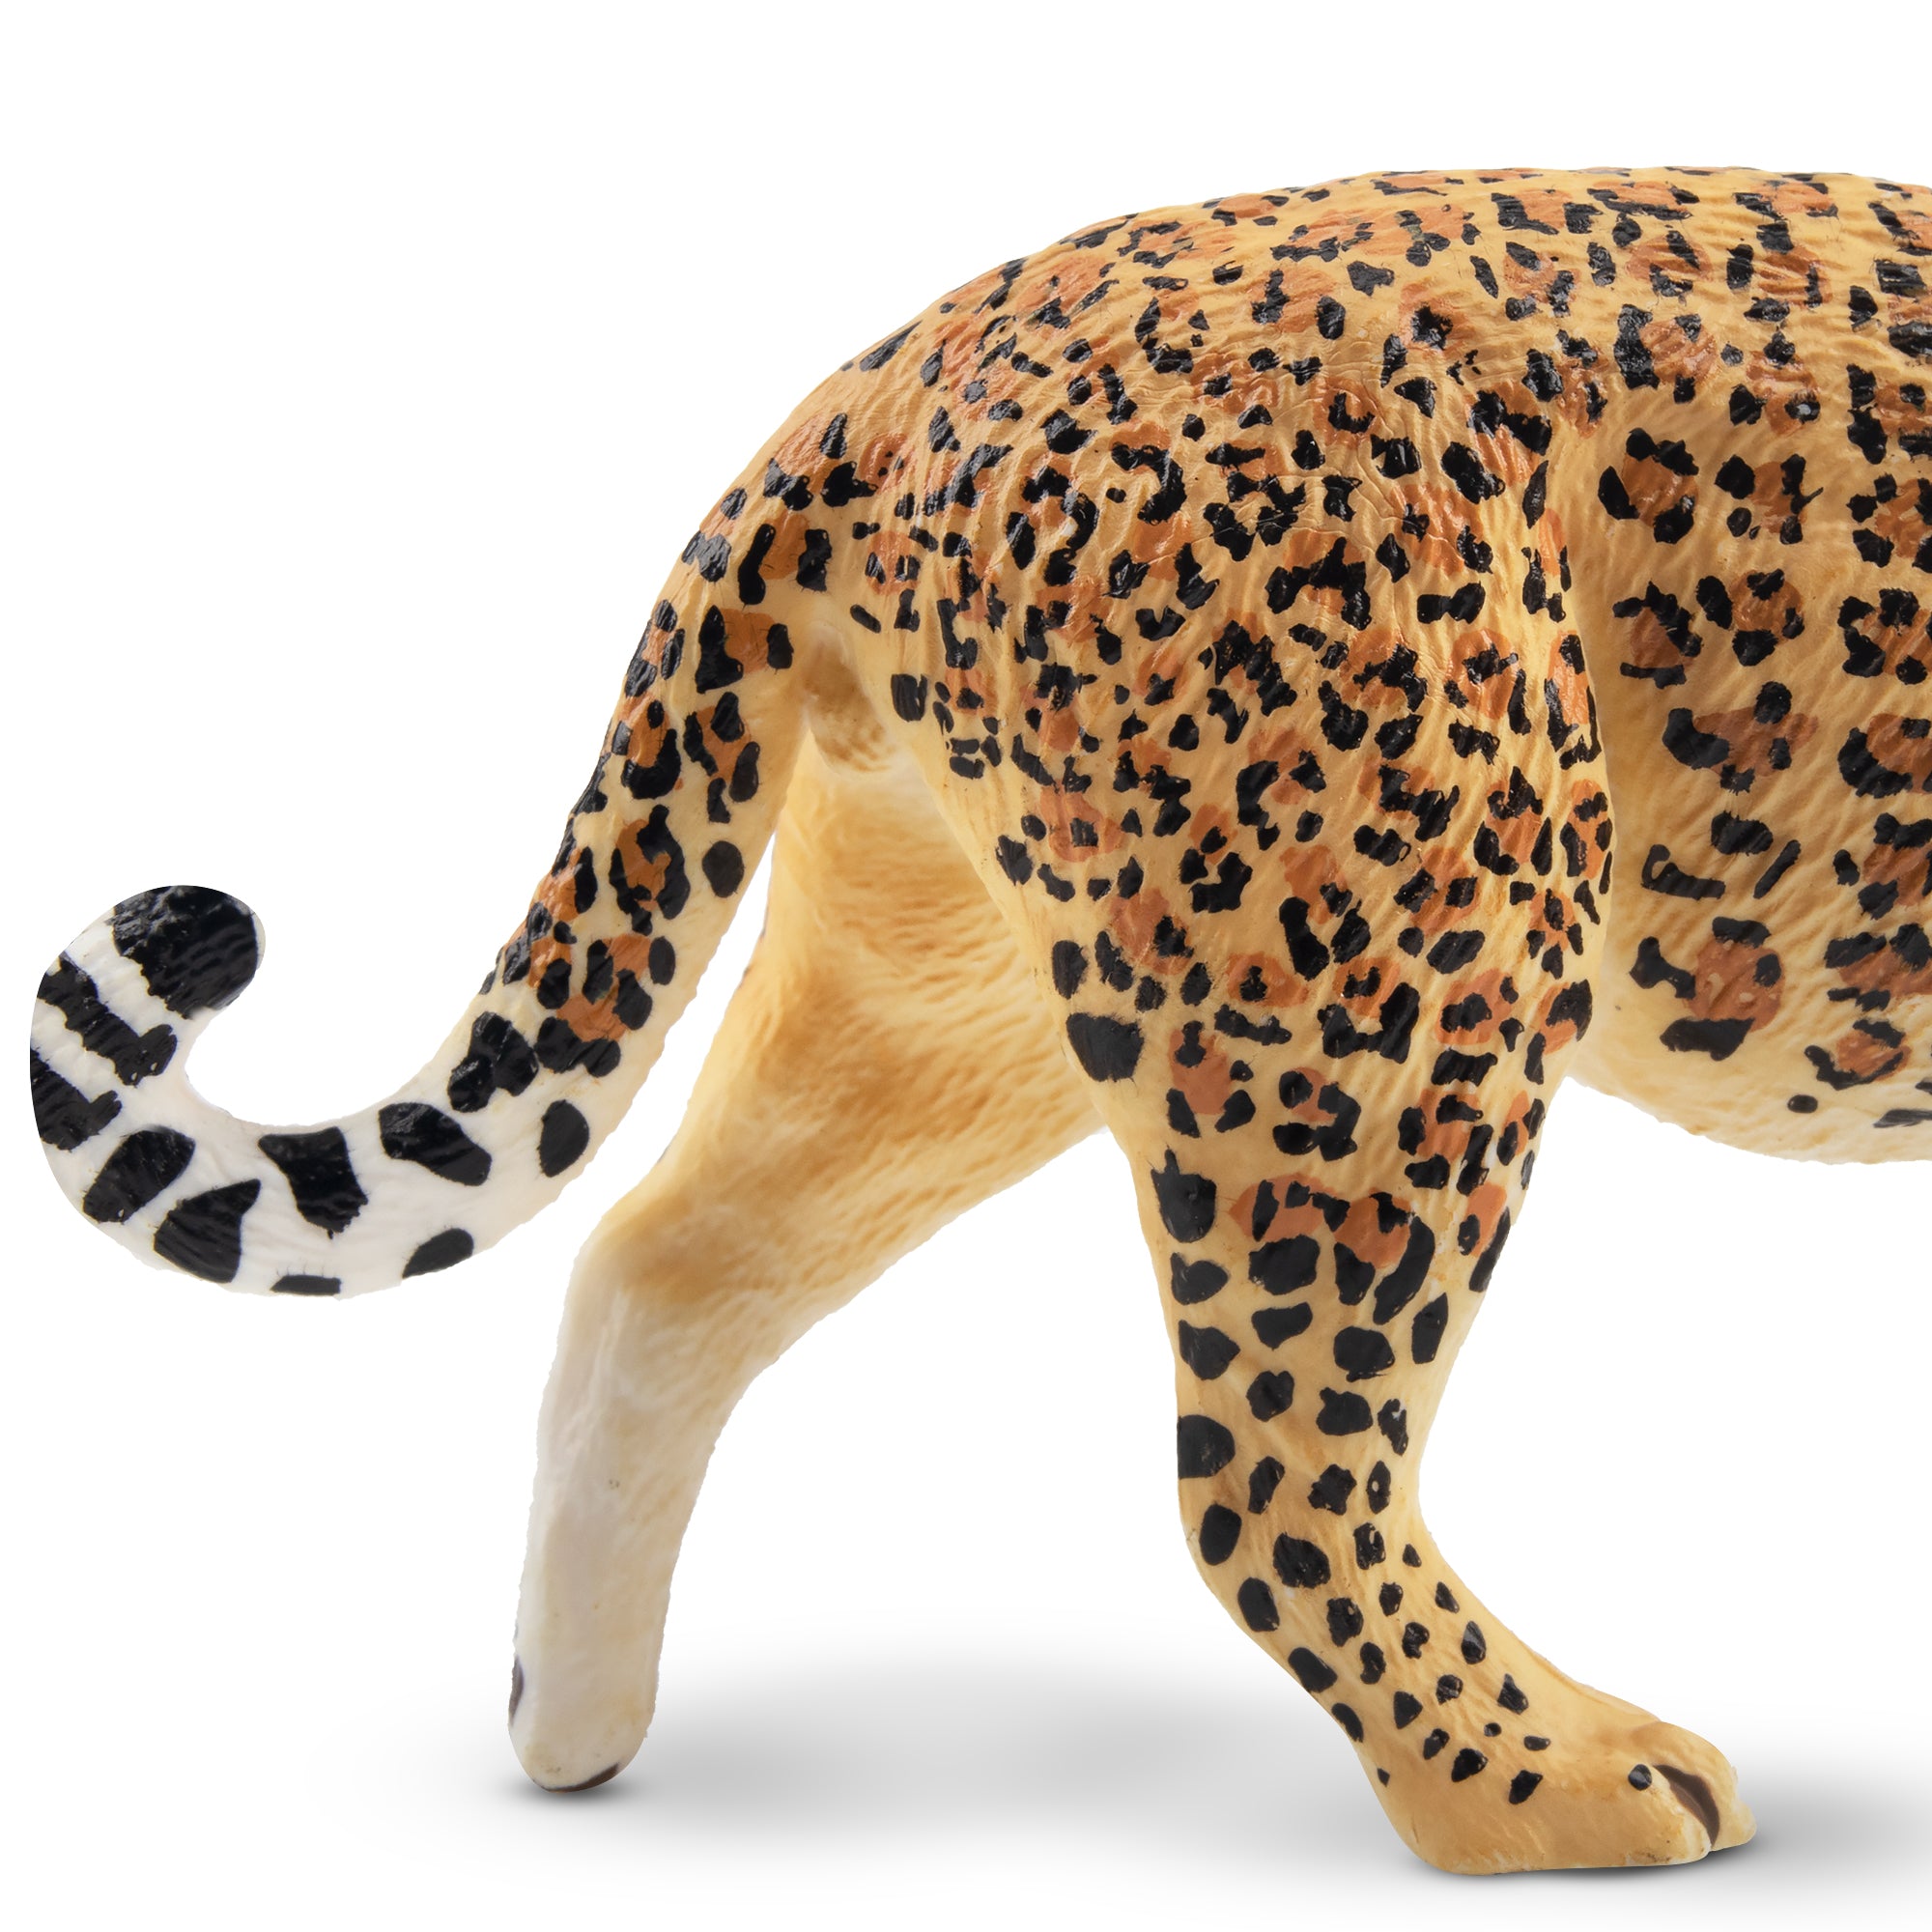 Toymany Jaguar Figurine Toy-detail